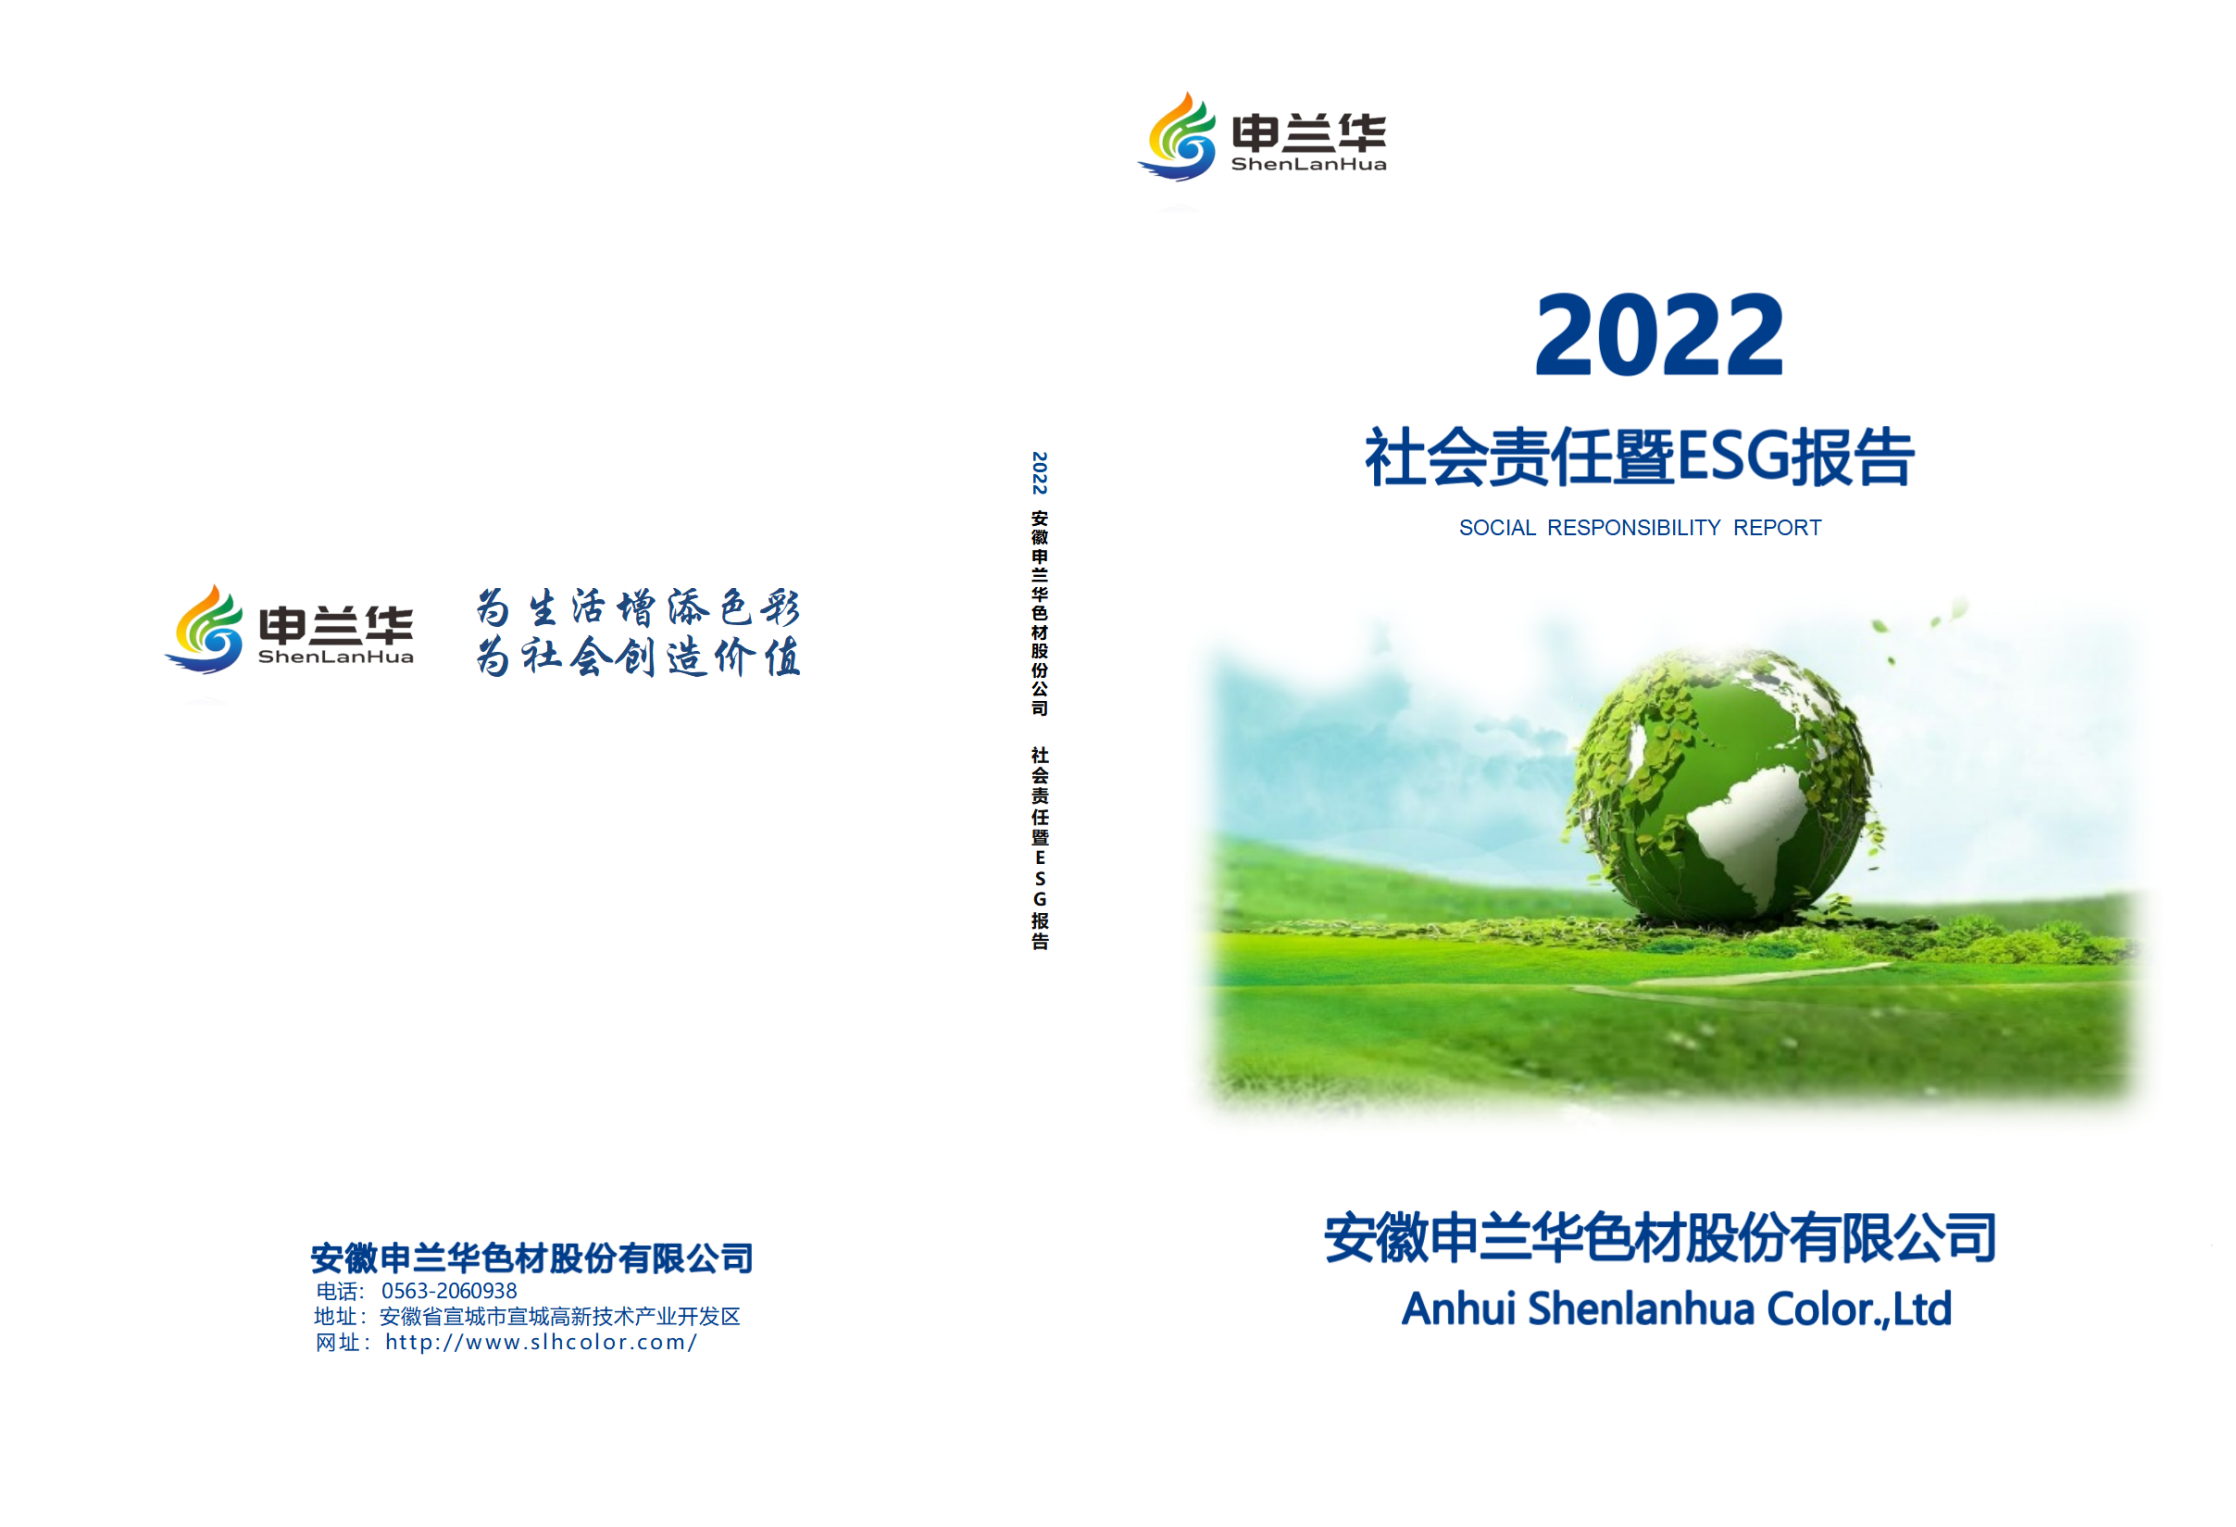 2022年度安徽申兰华色材股份有限公司社会责任暨ESG报告